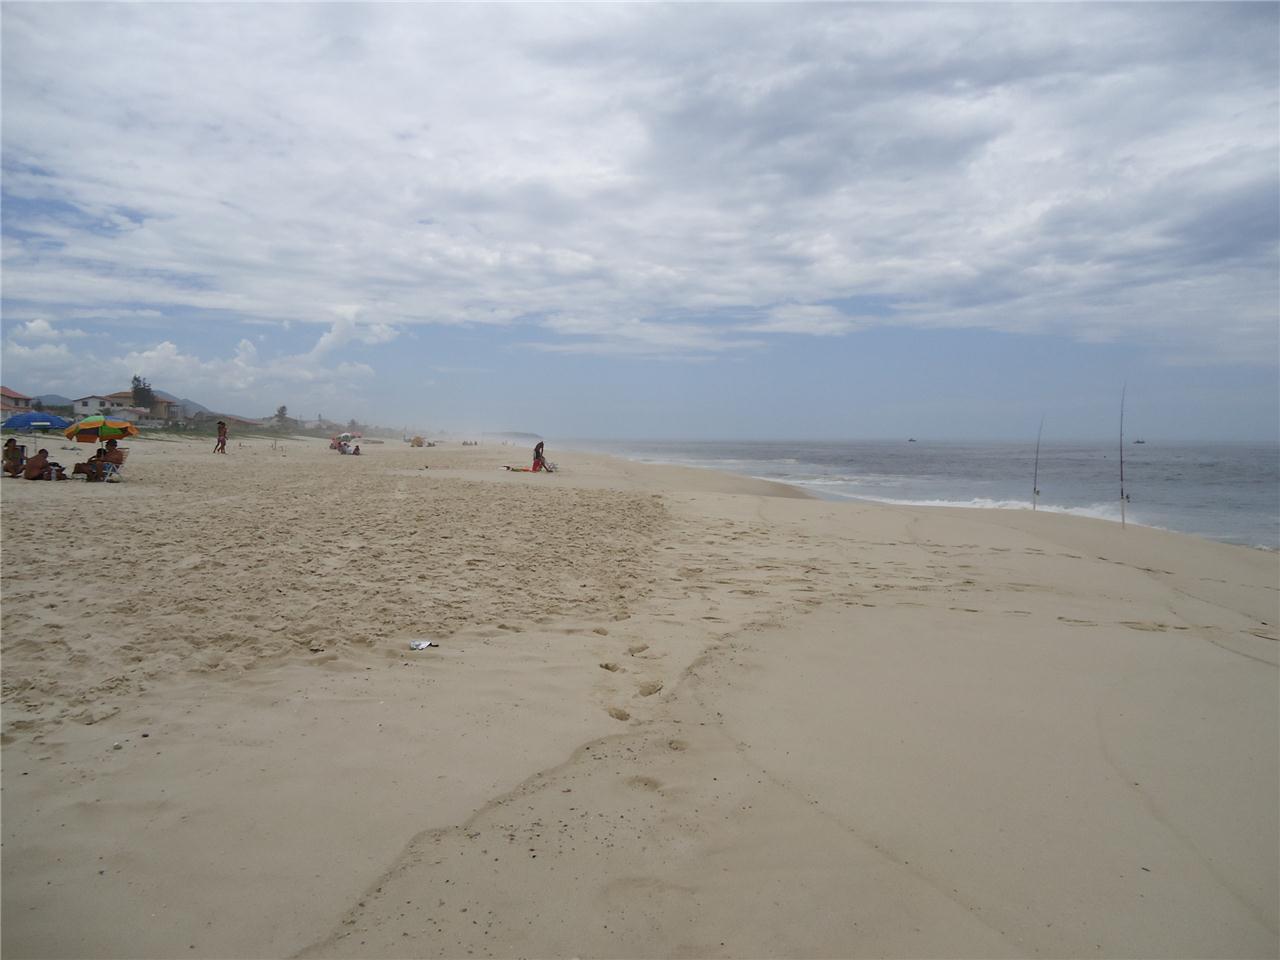 Zdjęcie Praia de Guaratiba - popularne miejsce wśród znawców relaksu